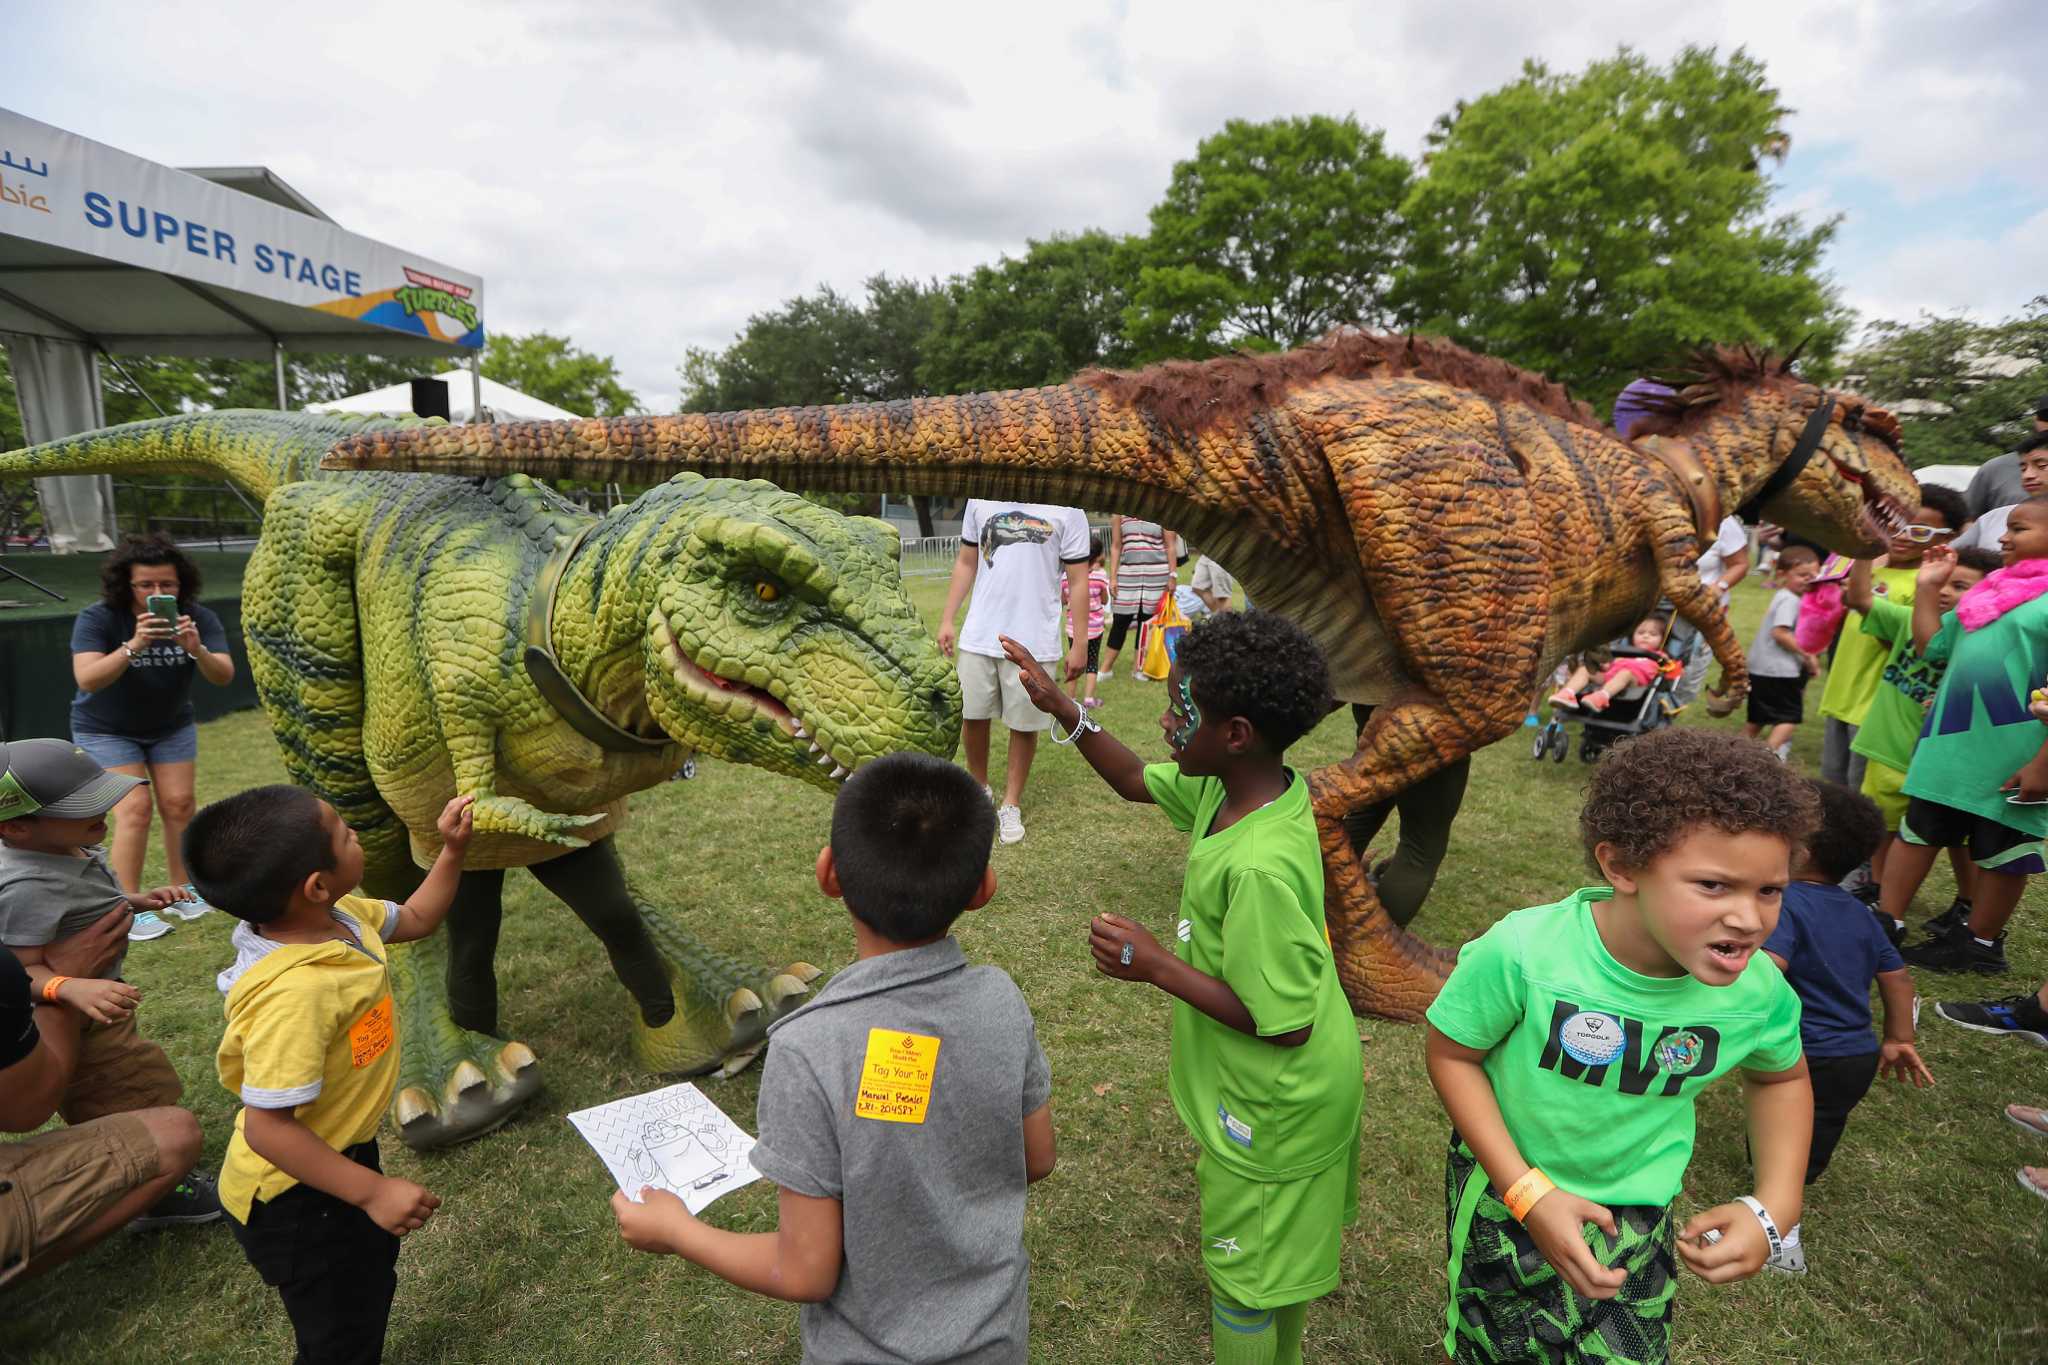 Houston Children's Festival packs tons of fun